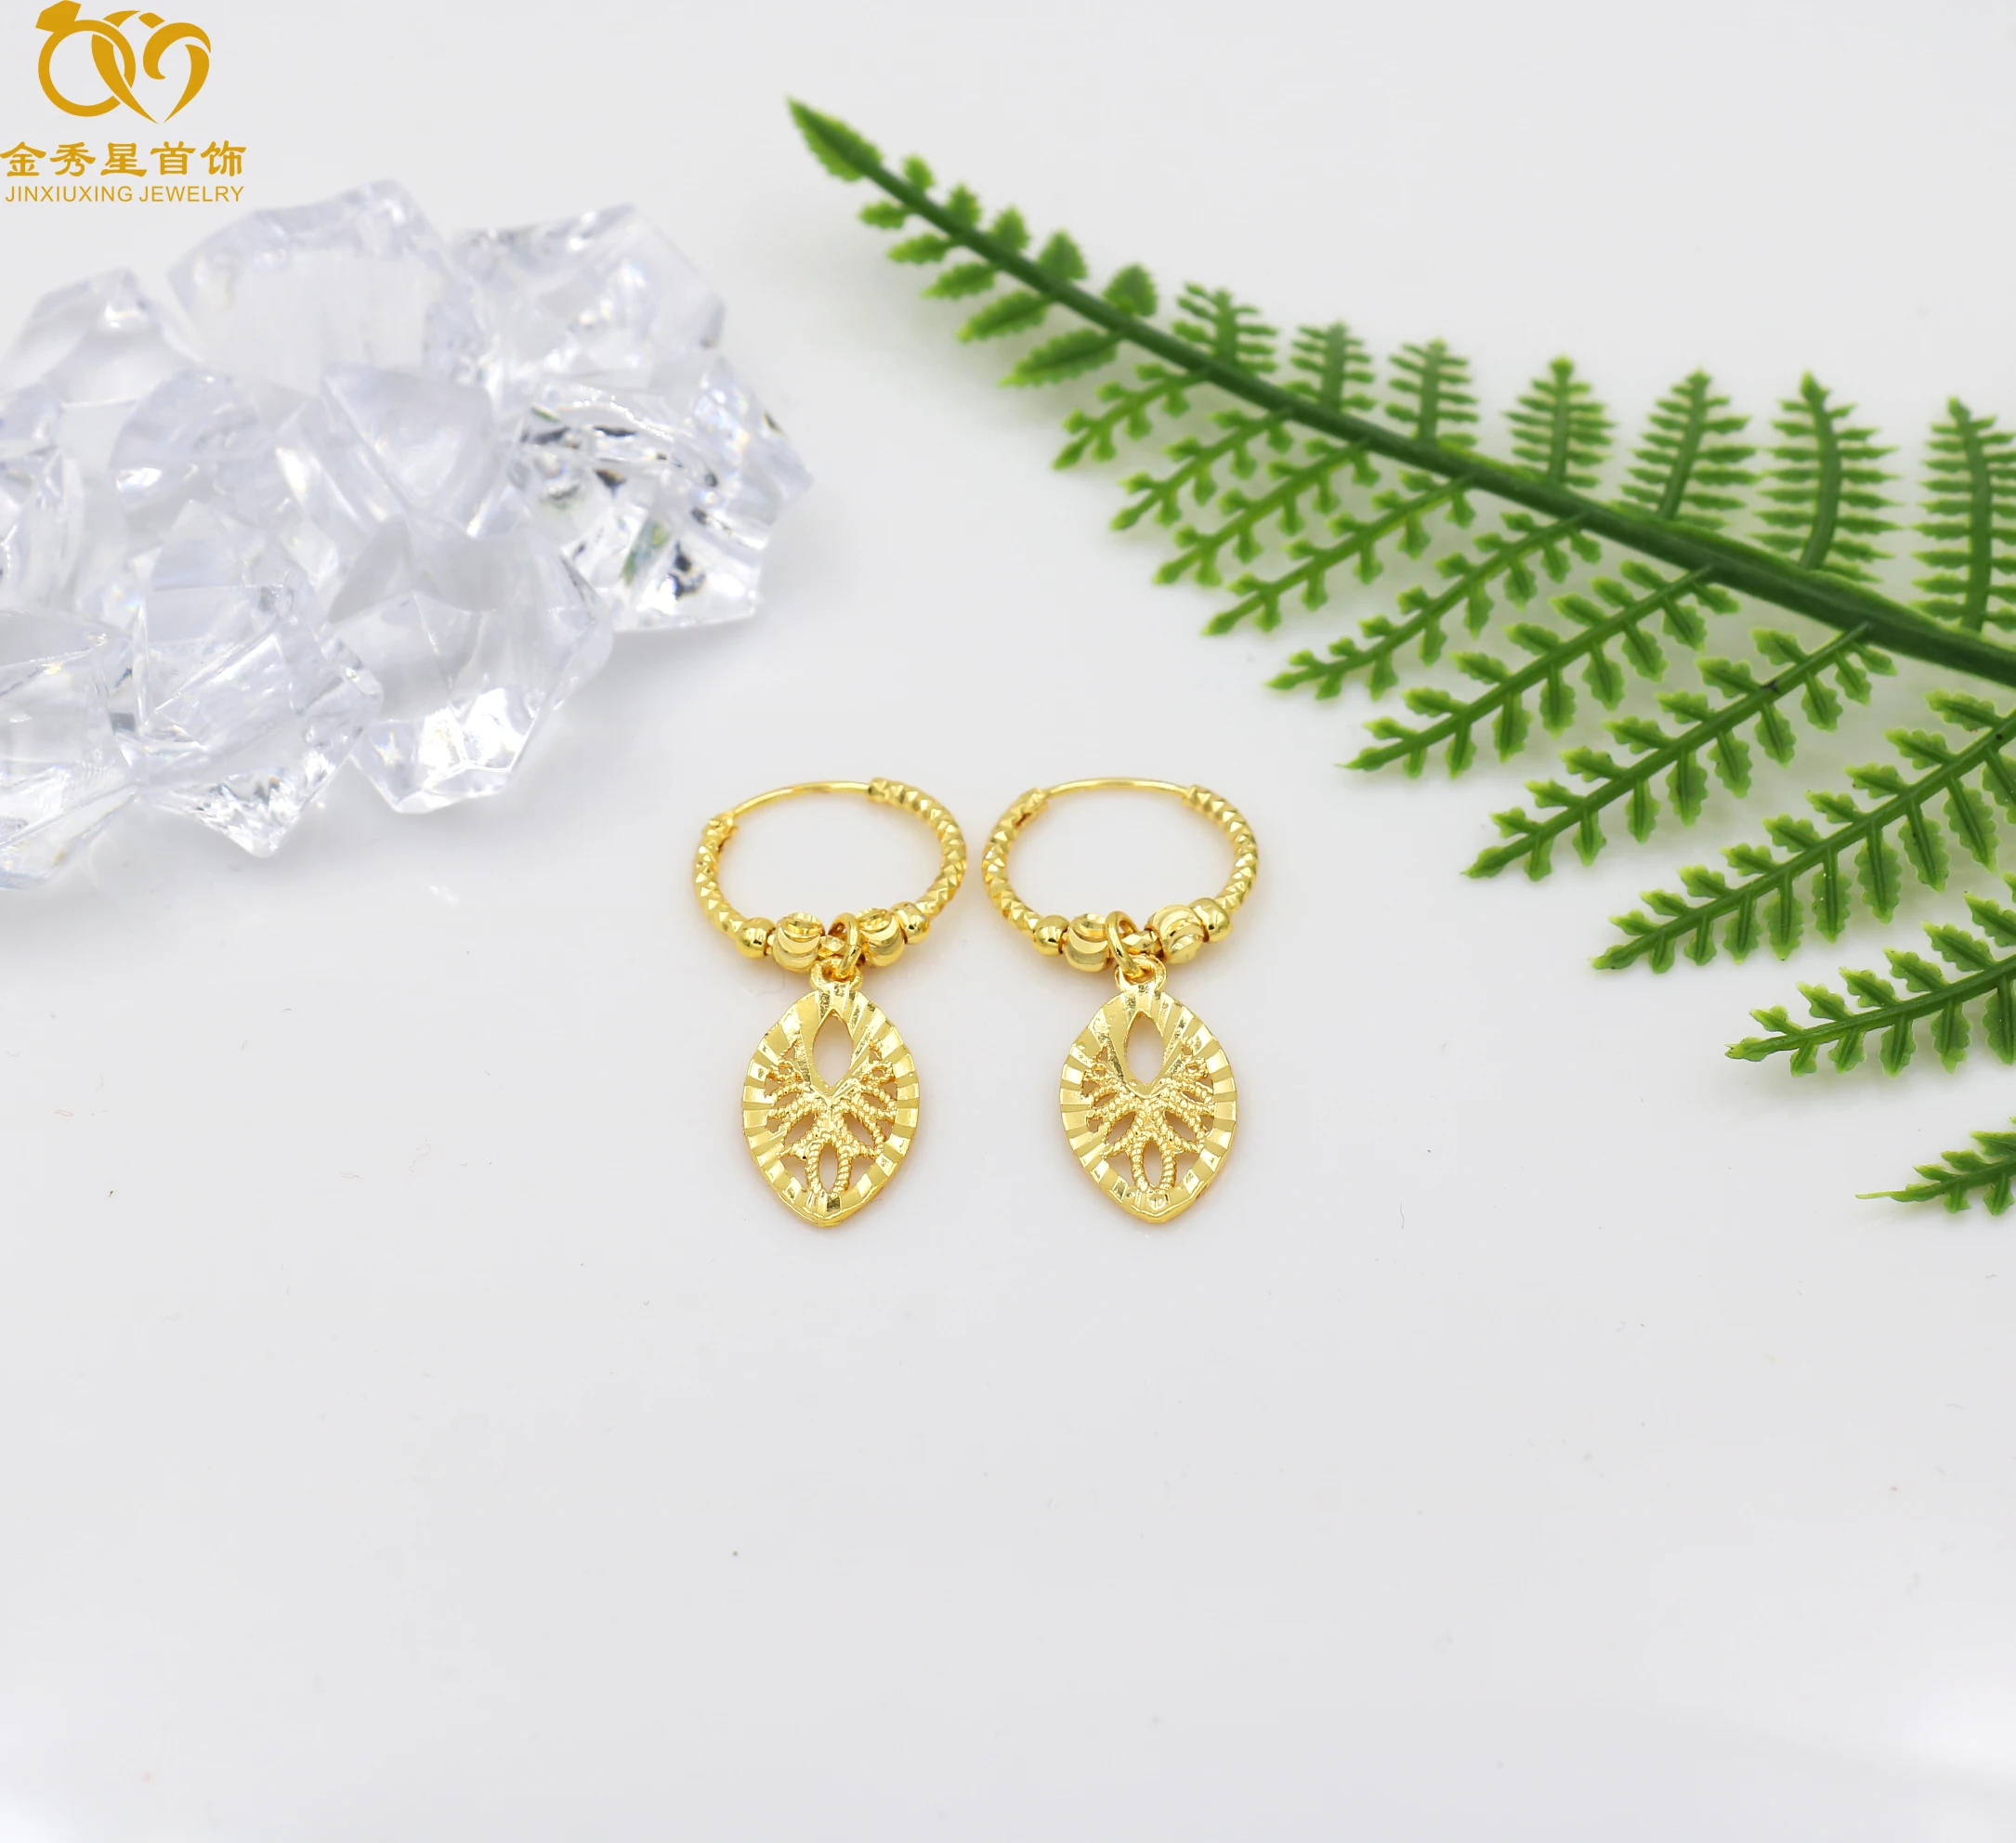 

JinXiuXIng 24 K gold plated jewelry Dubai fashion popular women's earrings, factory direct sales, quality assurance, Picture